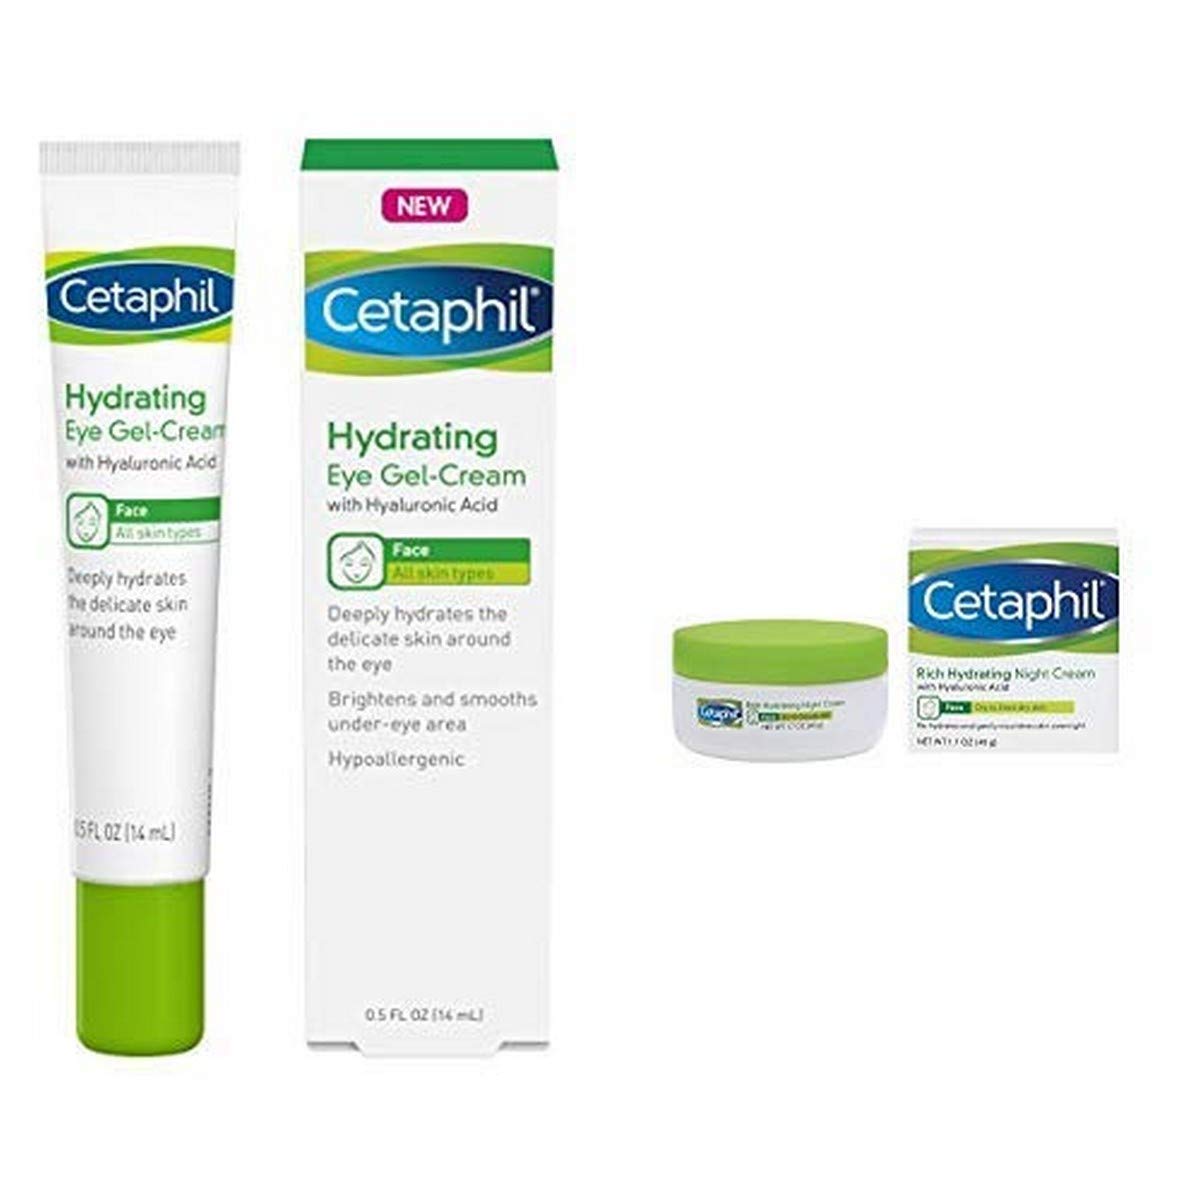 Cetaphil Hydrating Eye Gel-Cream 0.5 Fl. Oz with Rich Hydrating Night Cream with Hyaluronic Acid - 1.7 Ounce